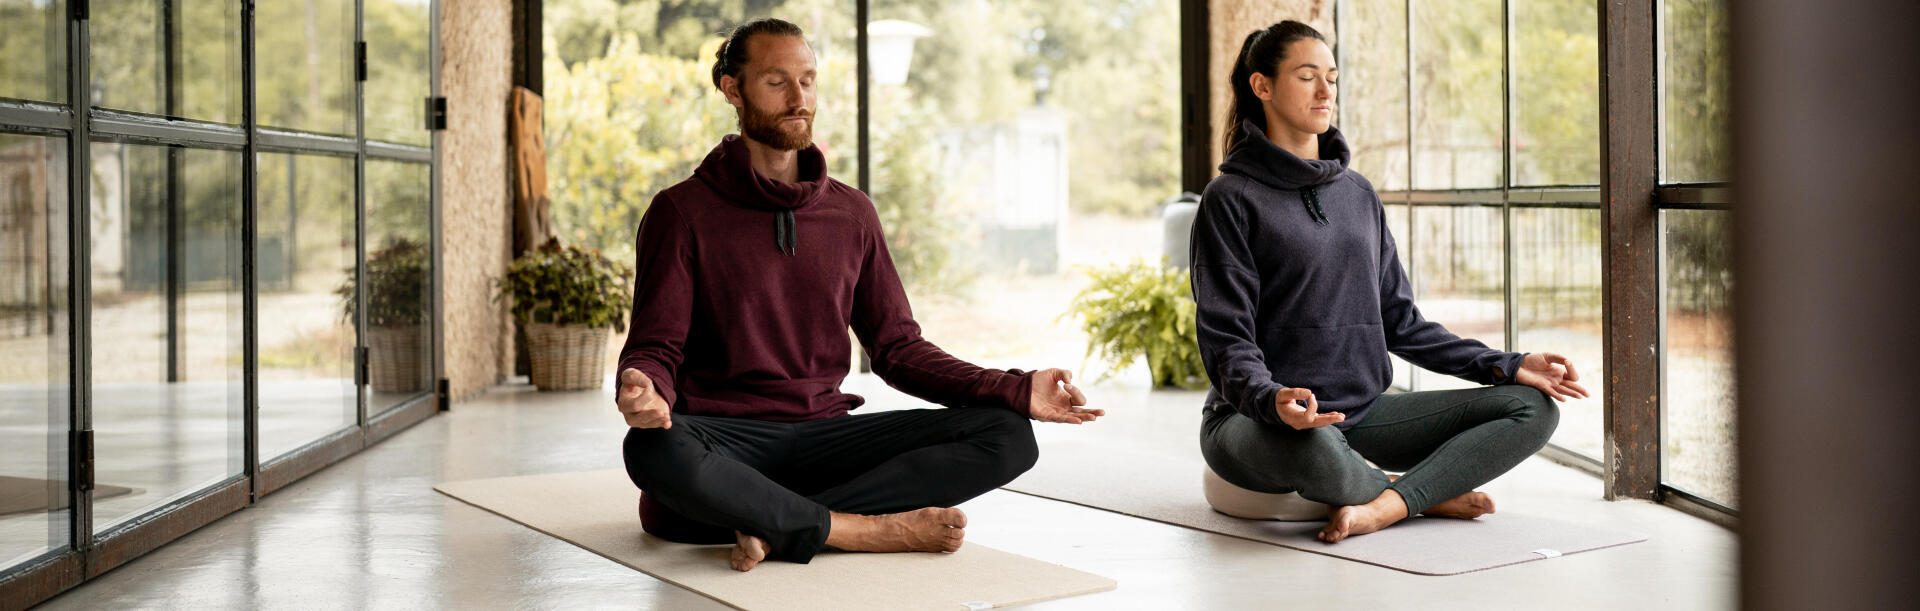 Comment créer son espace de yoga ?